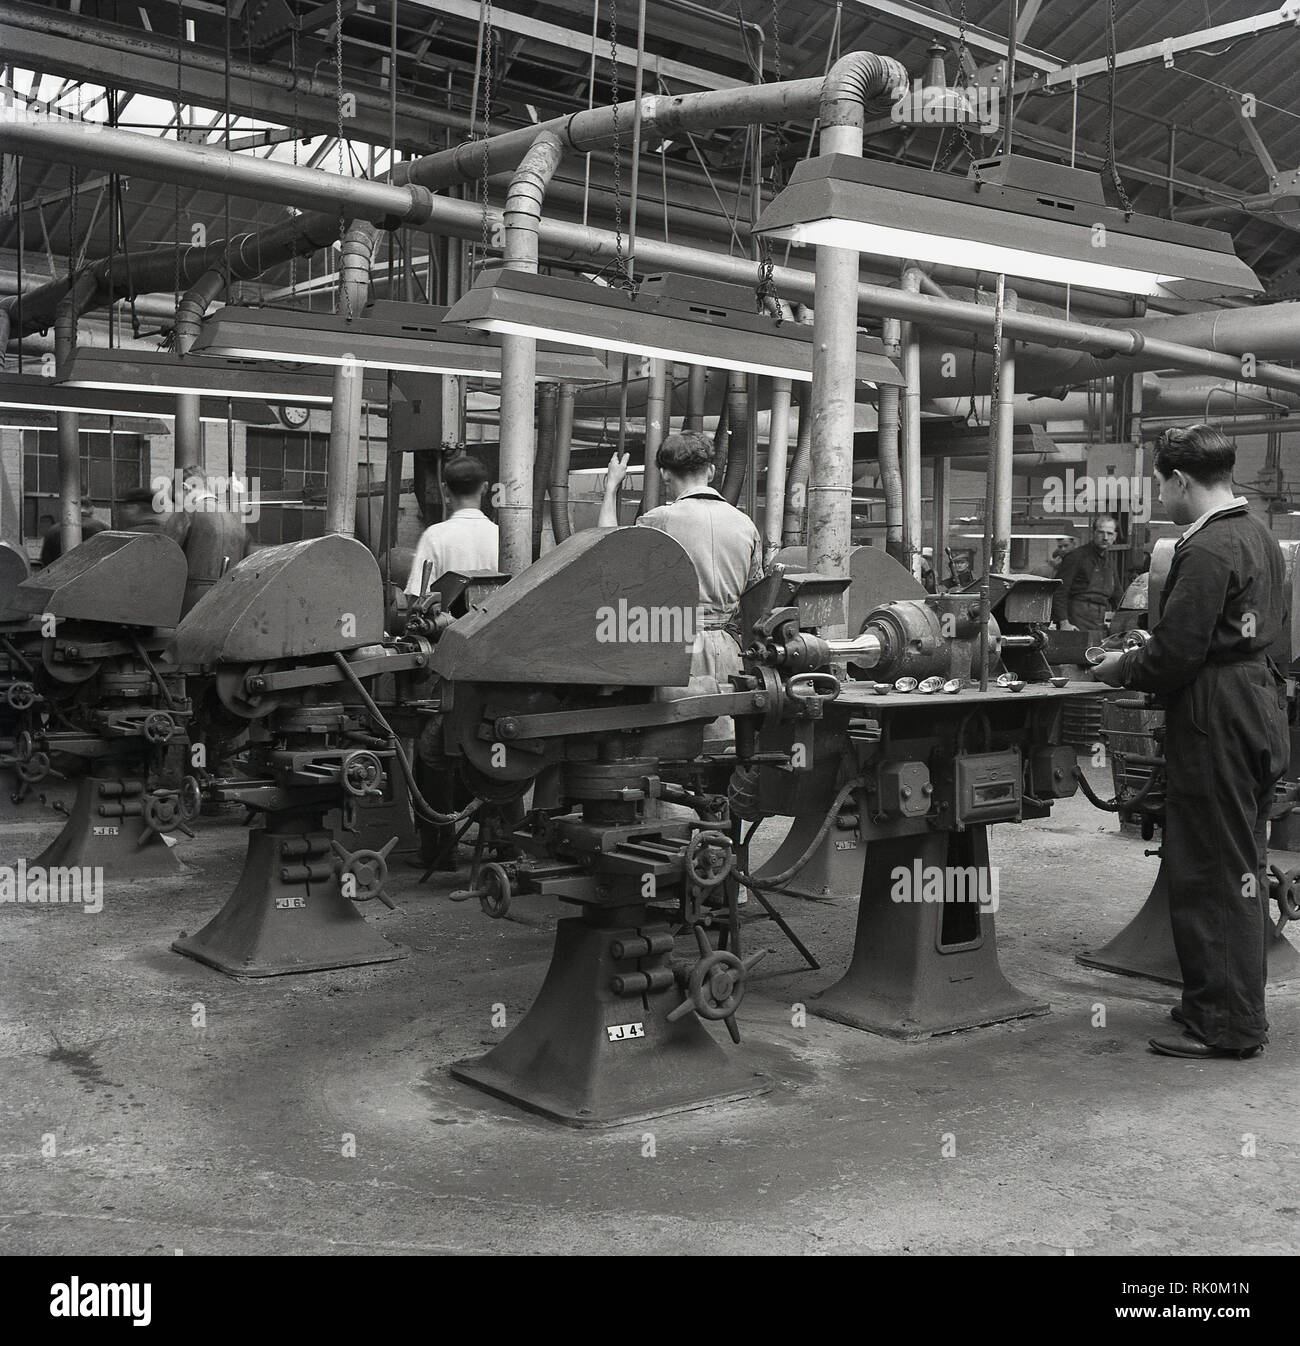 1950, historische, Männer in Overalls Arbeiten mit Maschinen auf dem Boden einer Fabrik, England, UK. Stockfoto